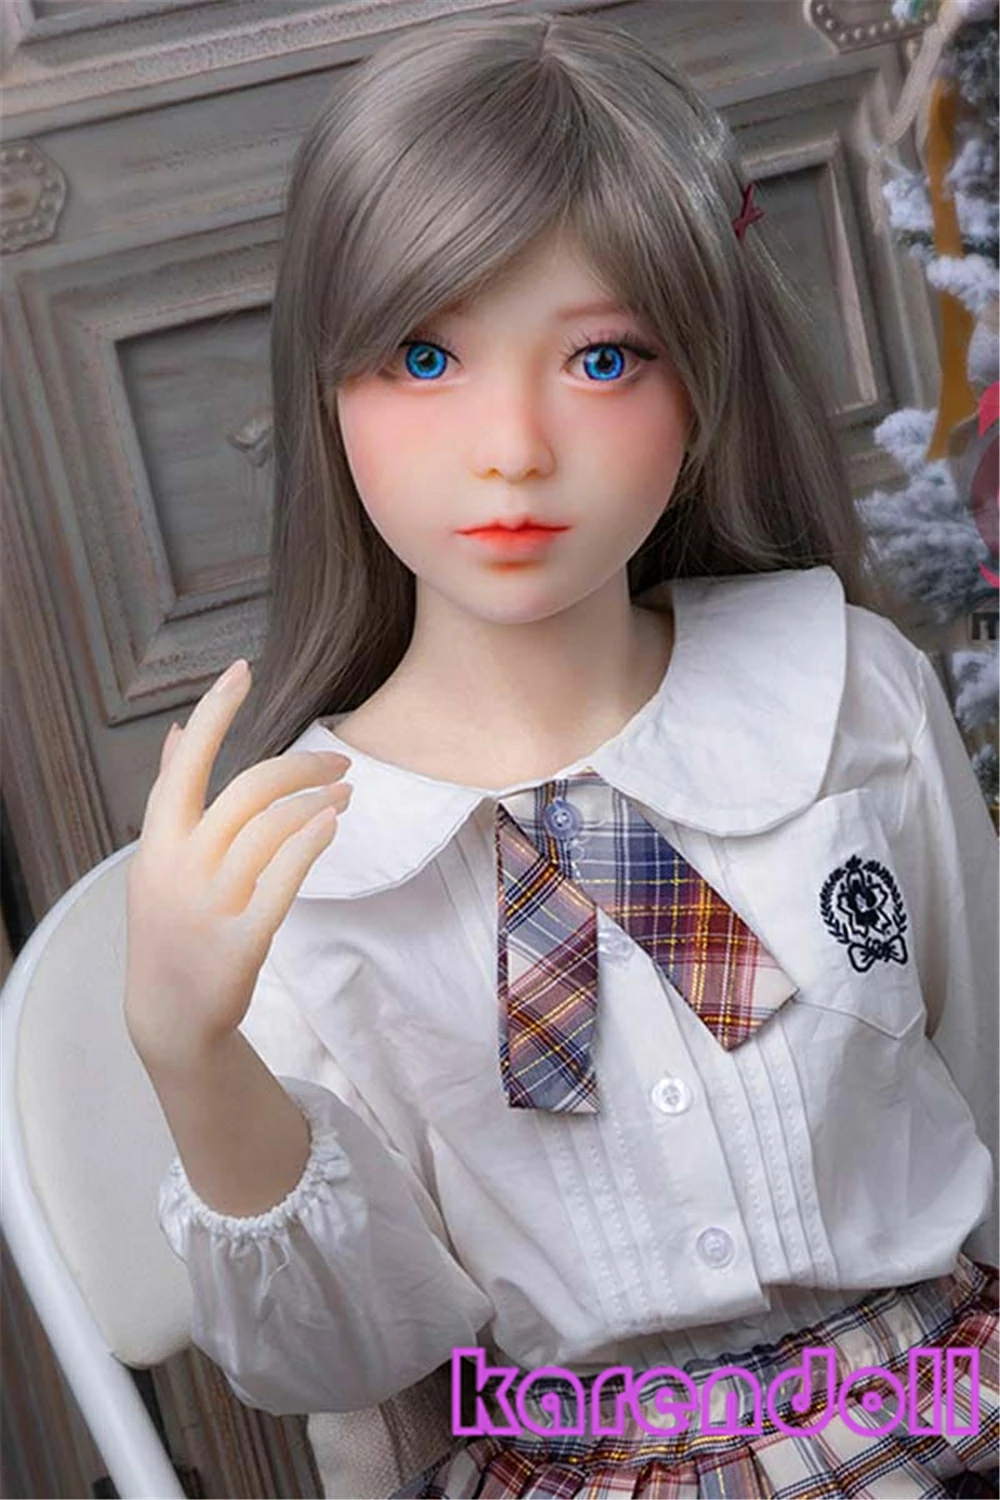 Silver Hair Love Doll